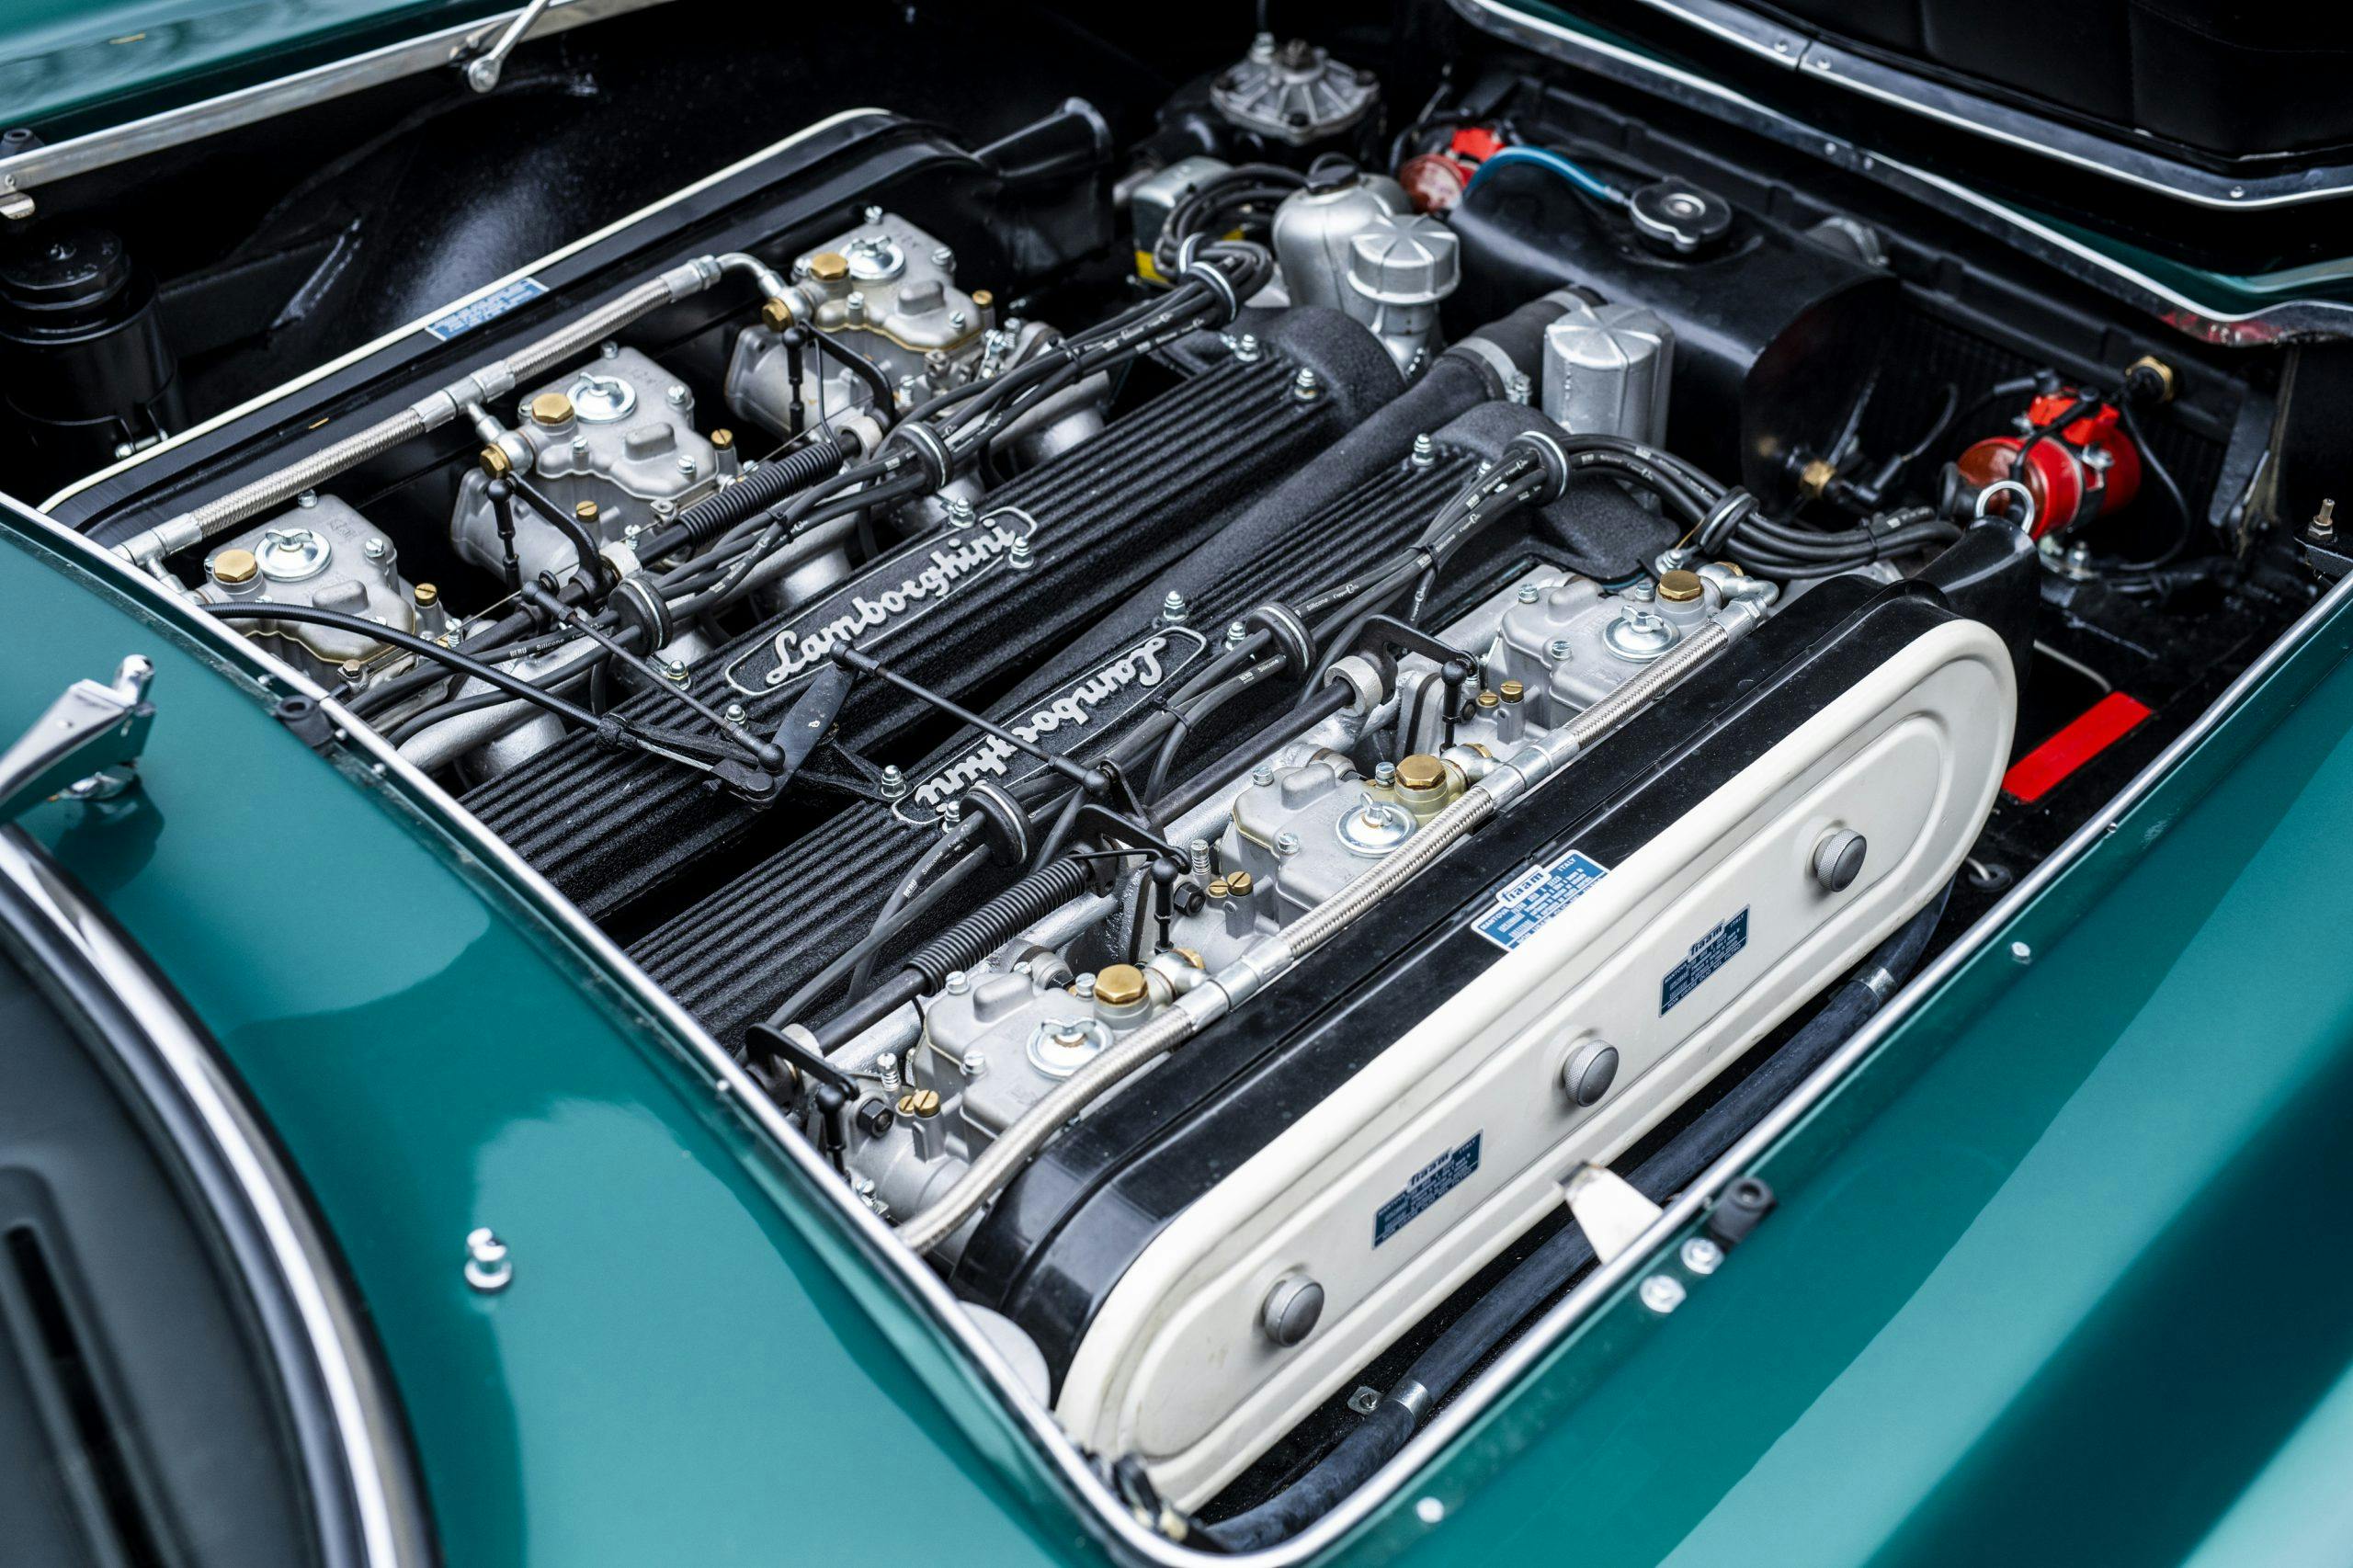 1967 Lamborghini 400 GT 2+2 engine